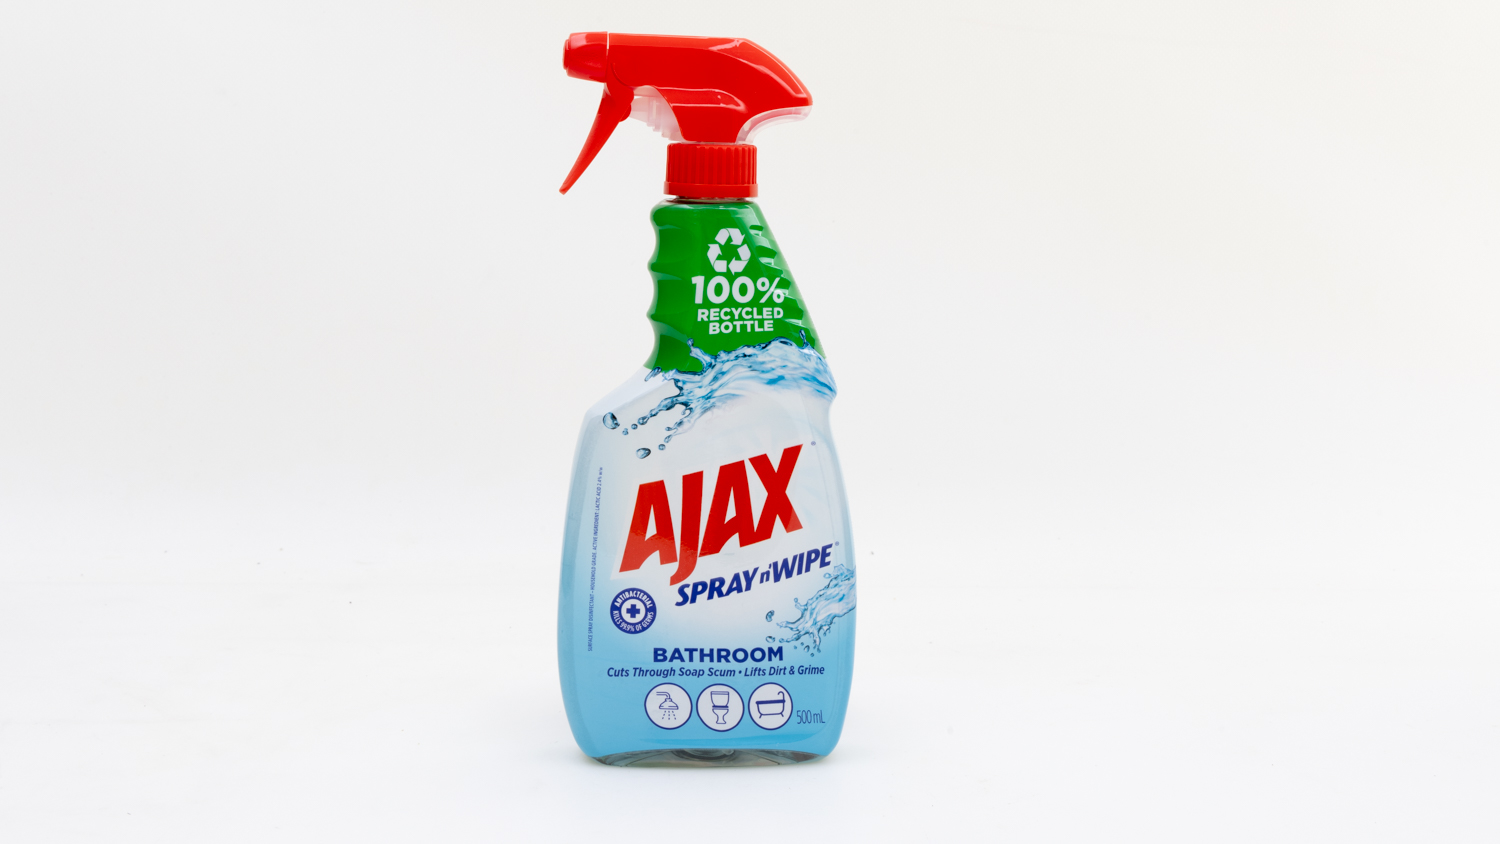 Ajax Spray n' Wipe Bathroom Cleaner carousel image